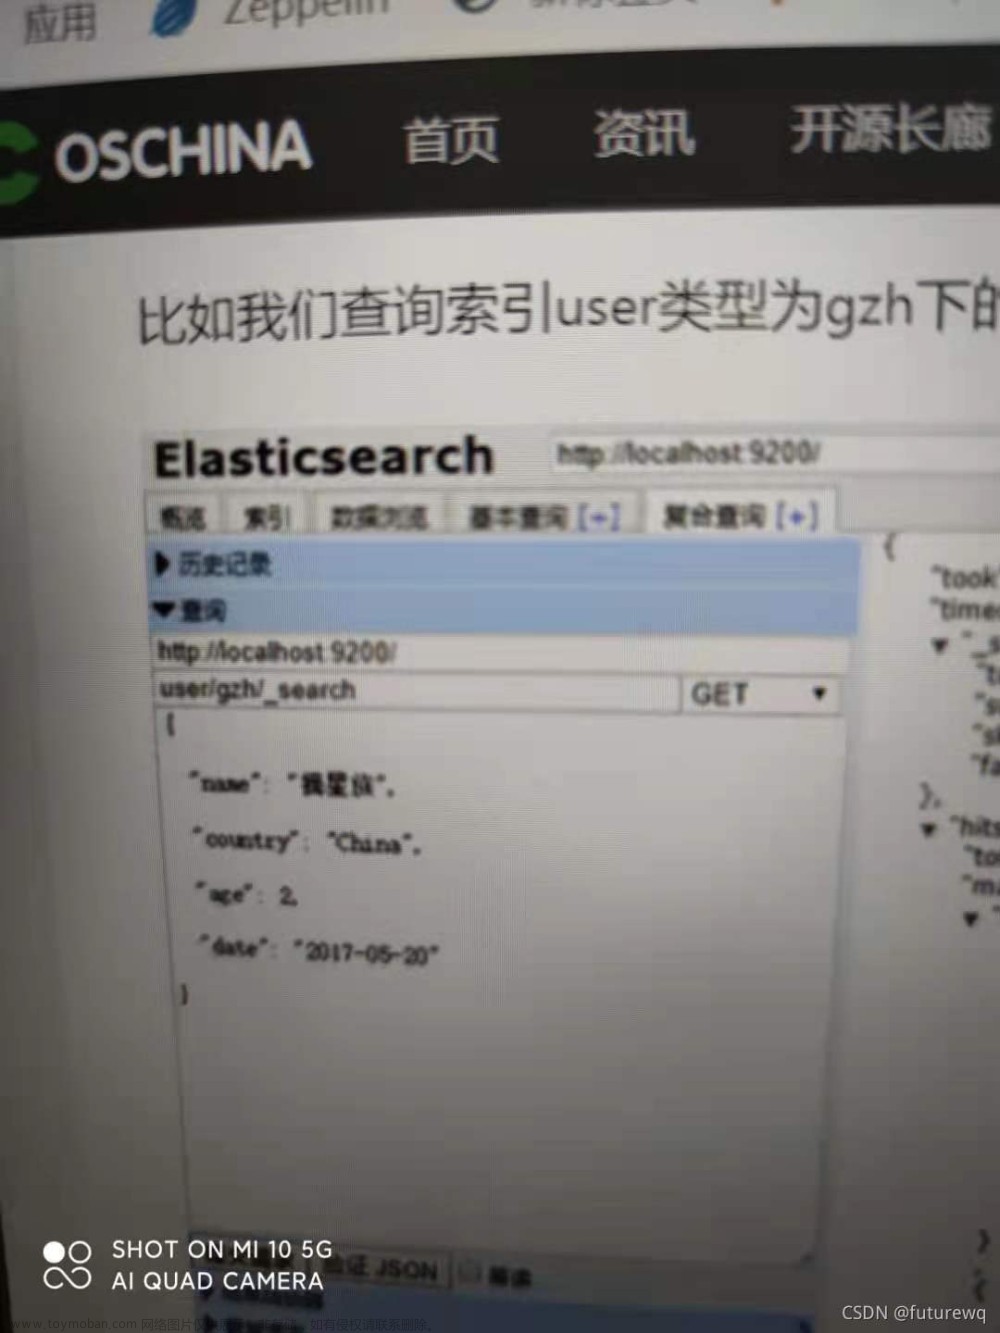 用elasticsearch head查询和删除es数据